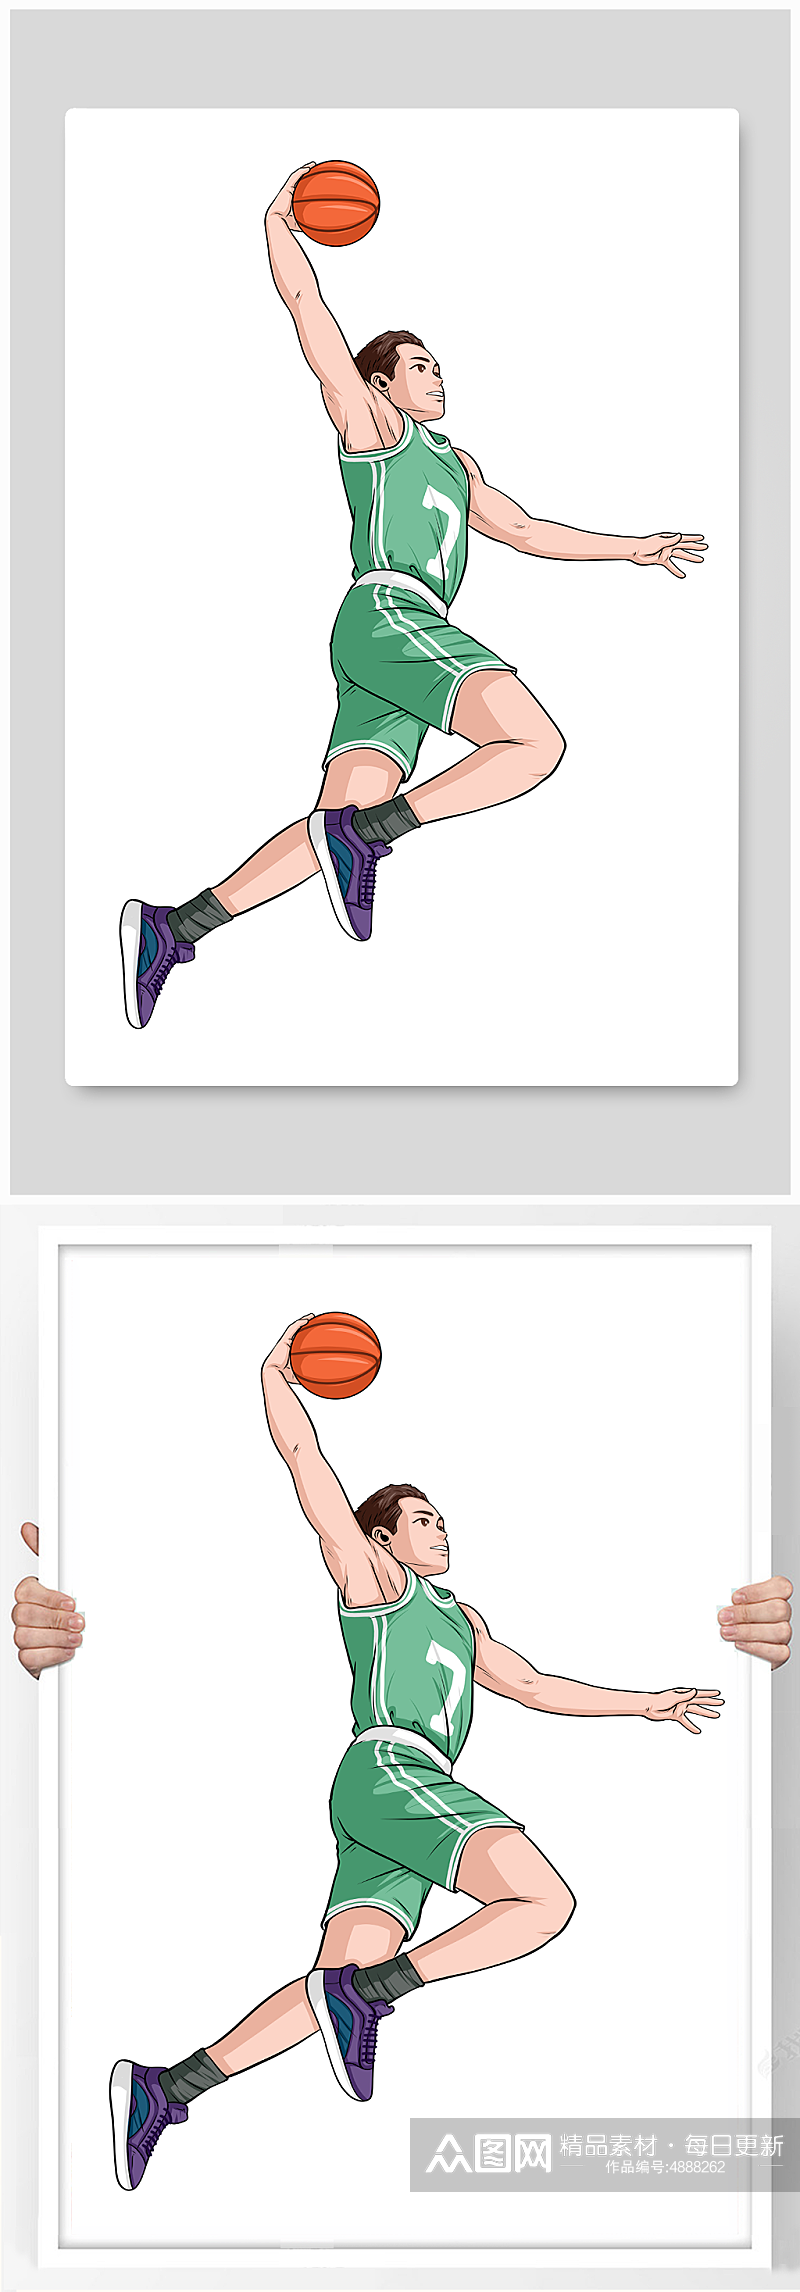 青春打篮球运动人物元素插画素材